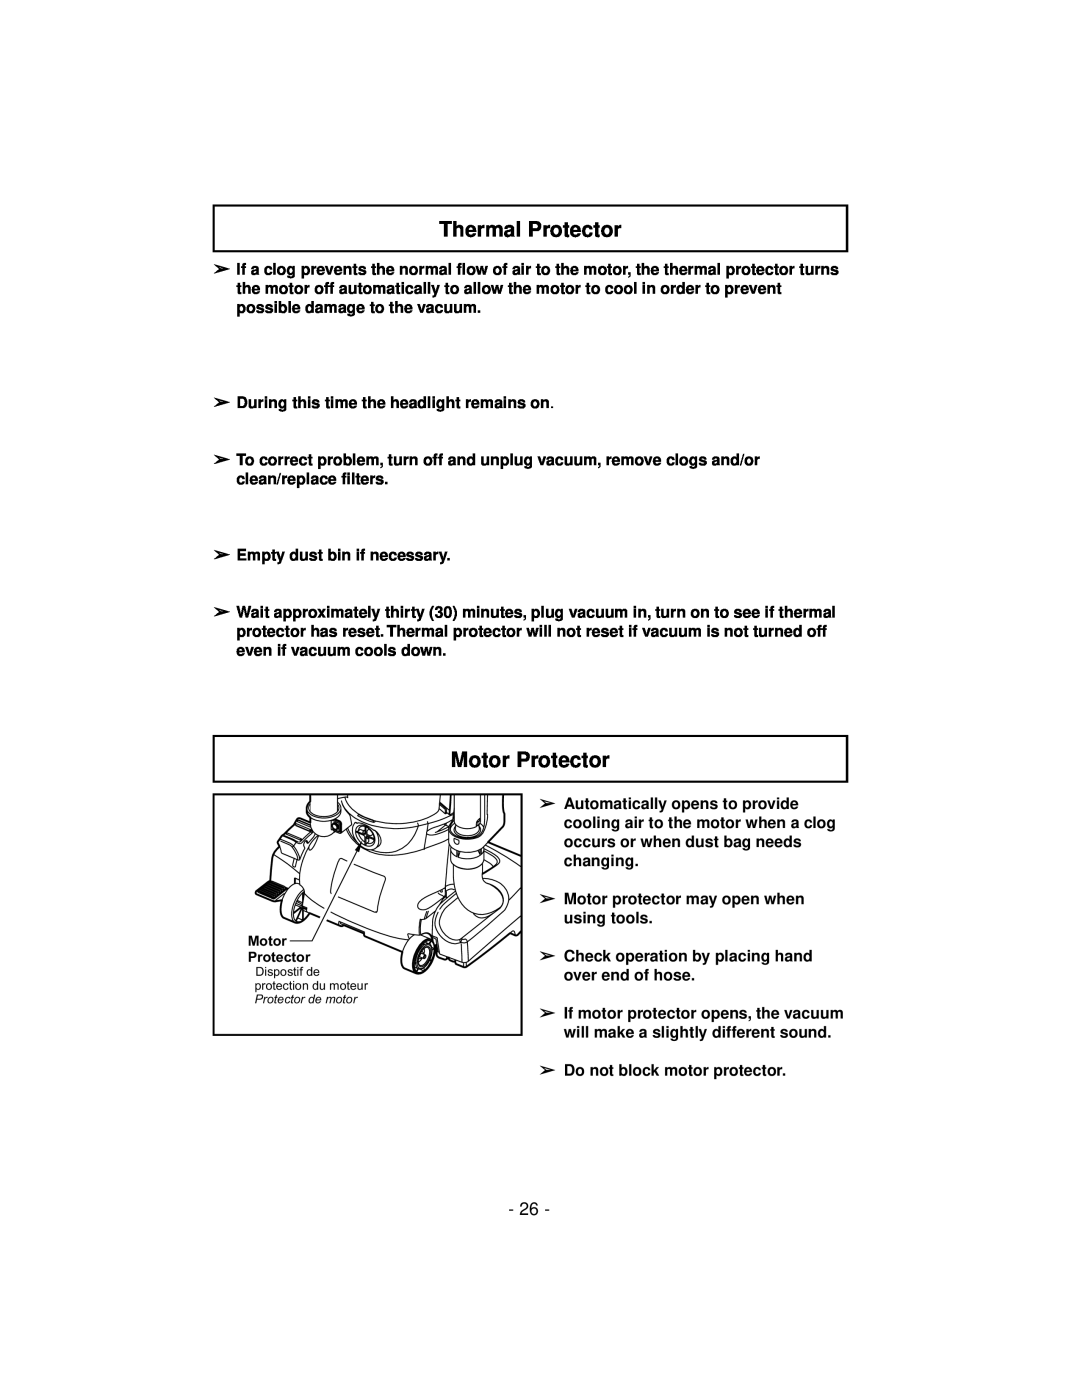 Panasonic MC-V7600 operating instructions Thermal Protector, Motor Protector 